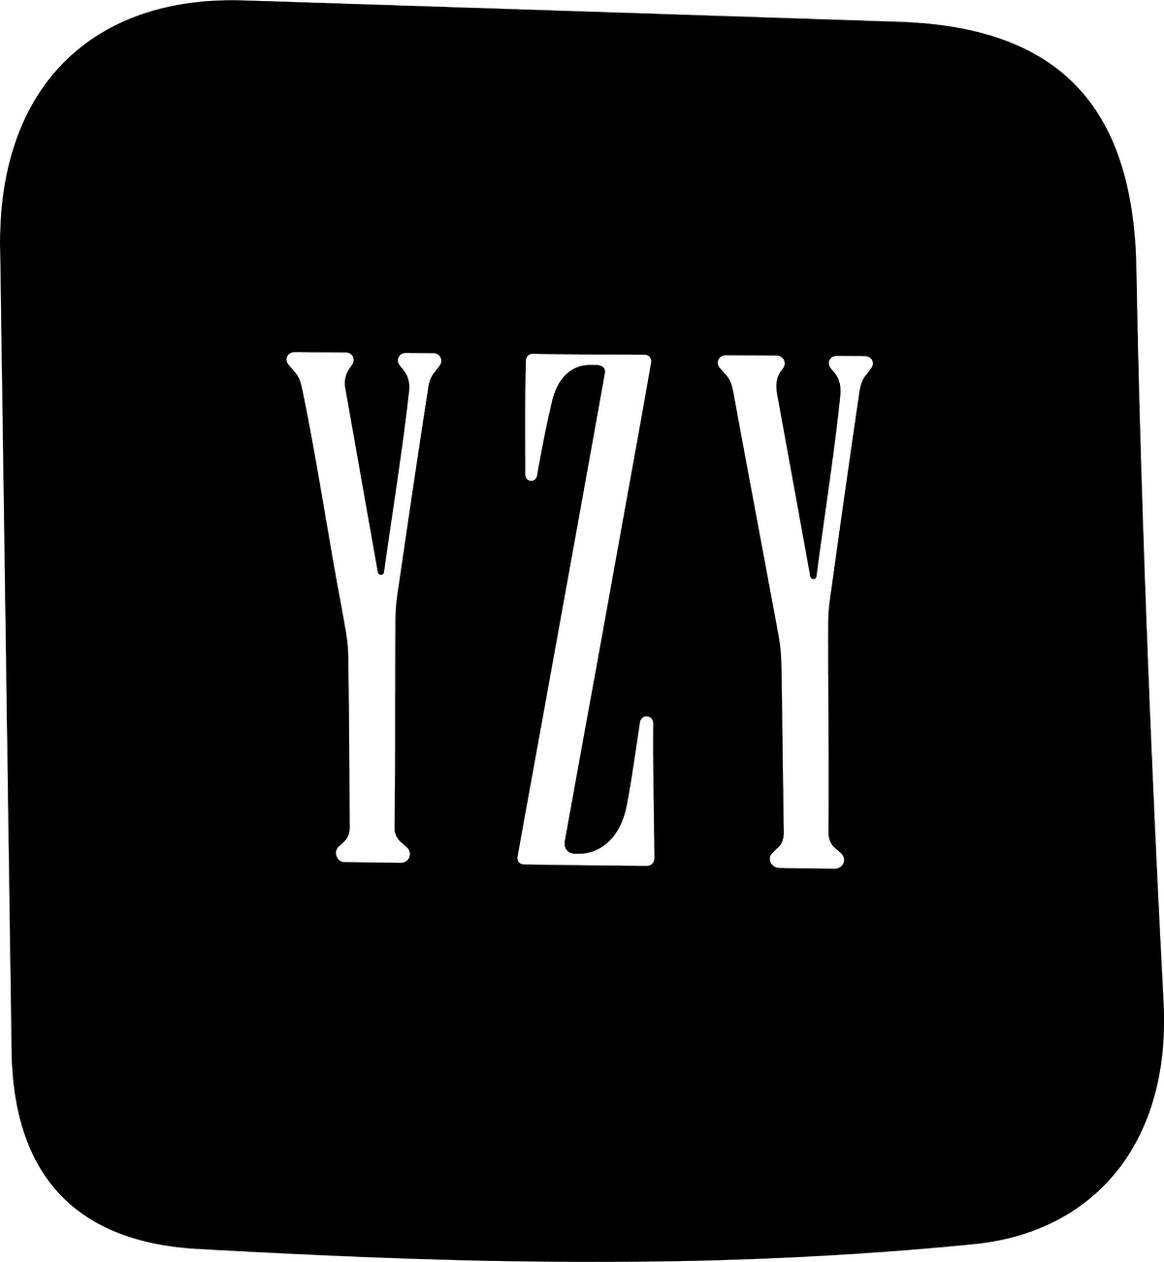 Photo Credits: Nuevo logo de la cápsula “Yeezy Gap Engineered by Balenciaga” de la línea Yeezy Gap de Gap y Kanye West. Fotografía por cortesía de Gap.